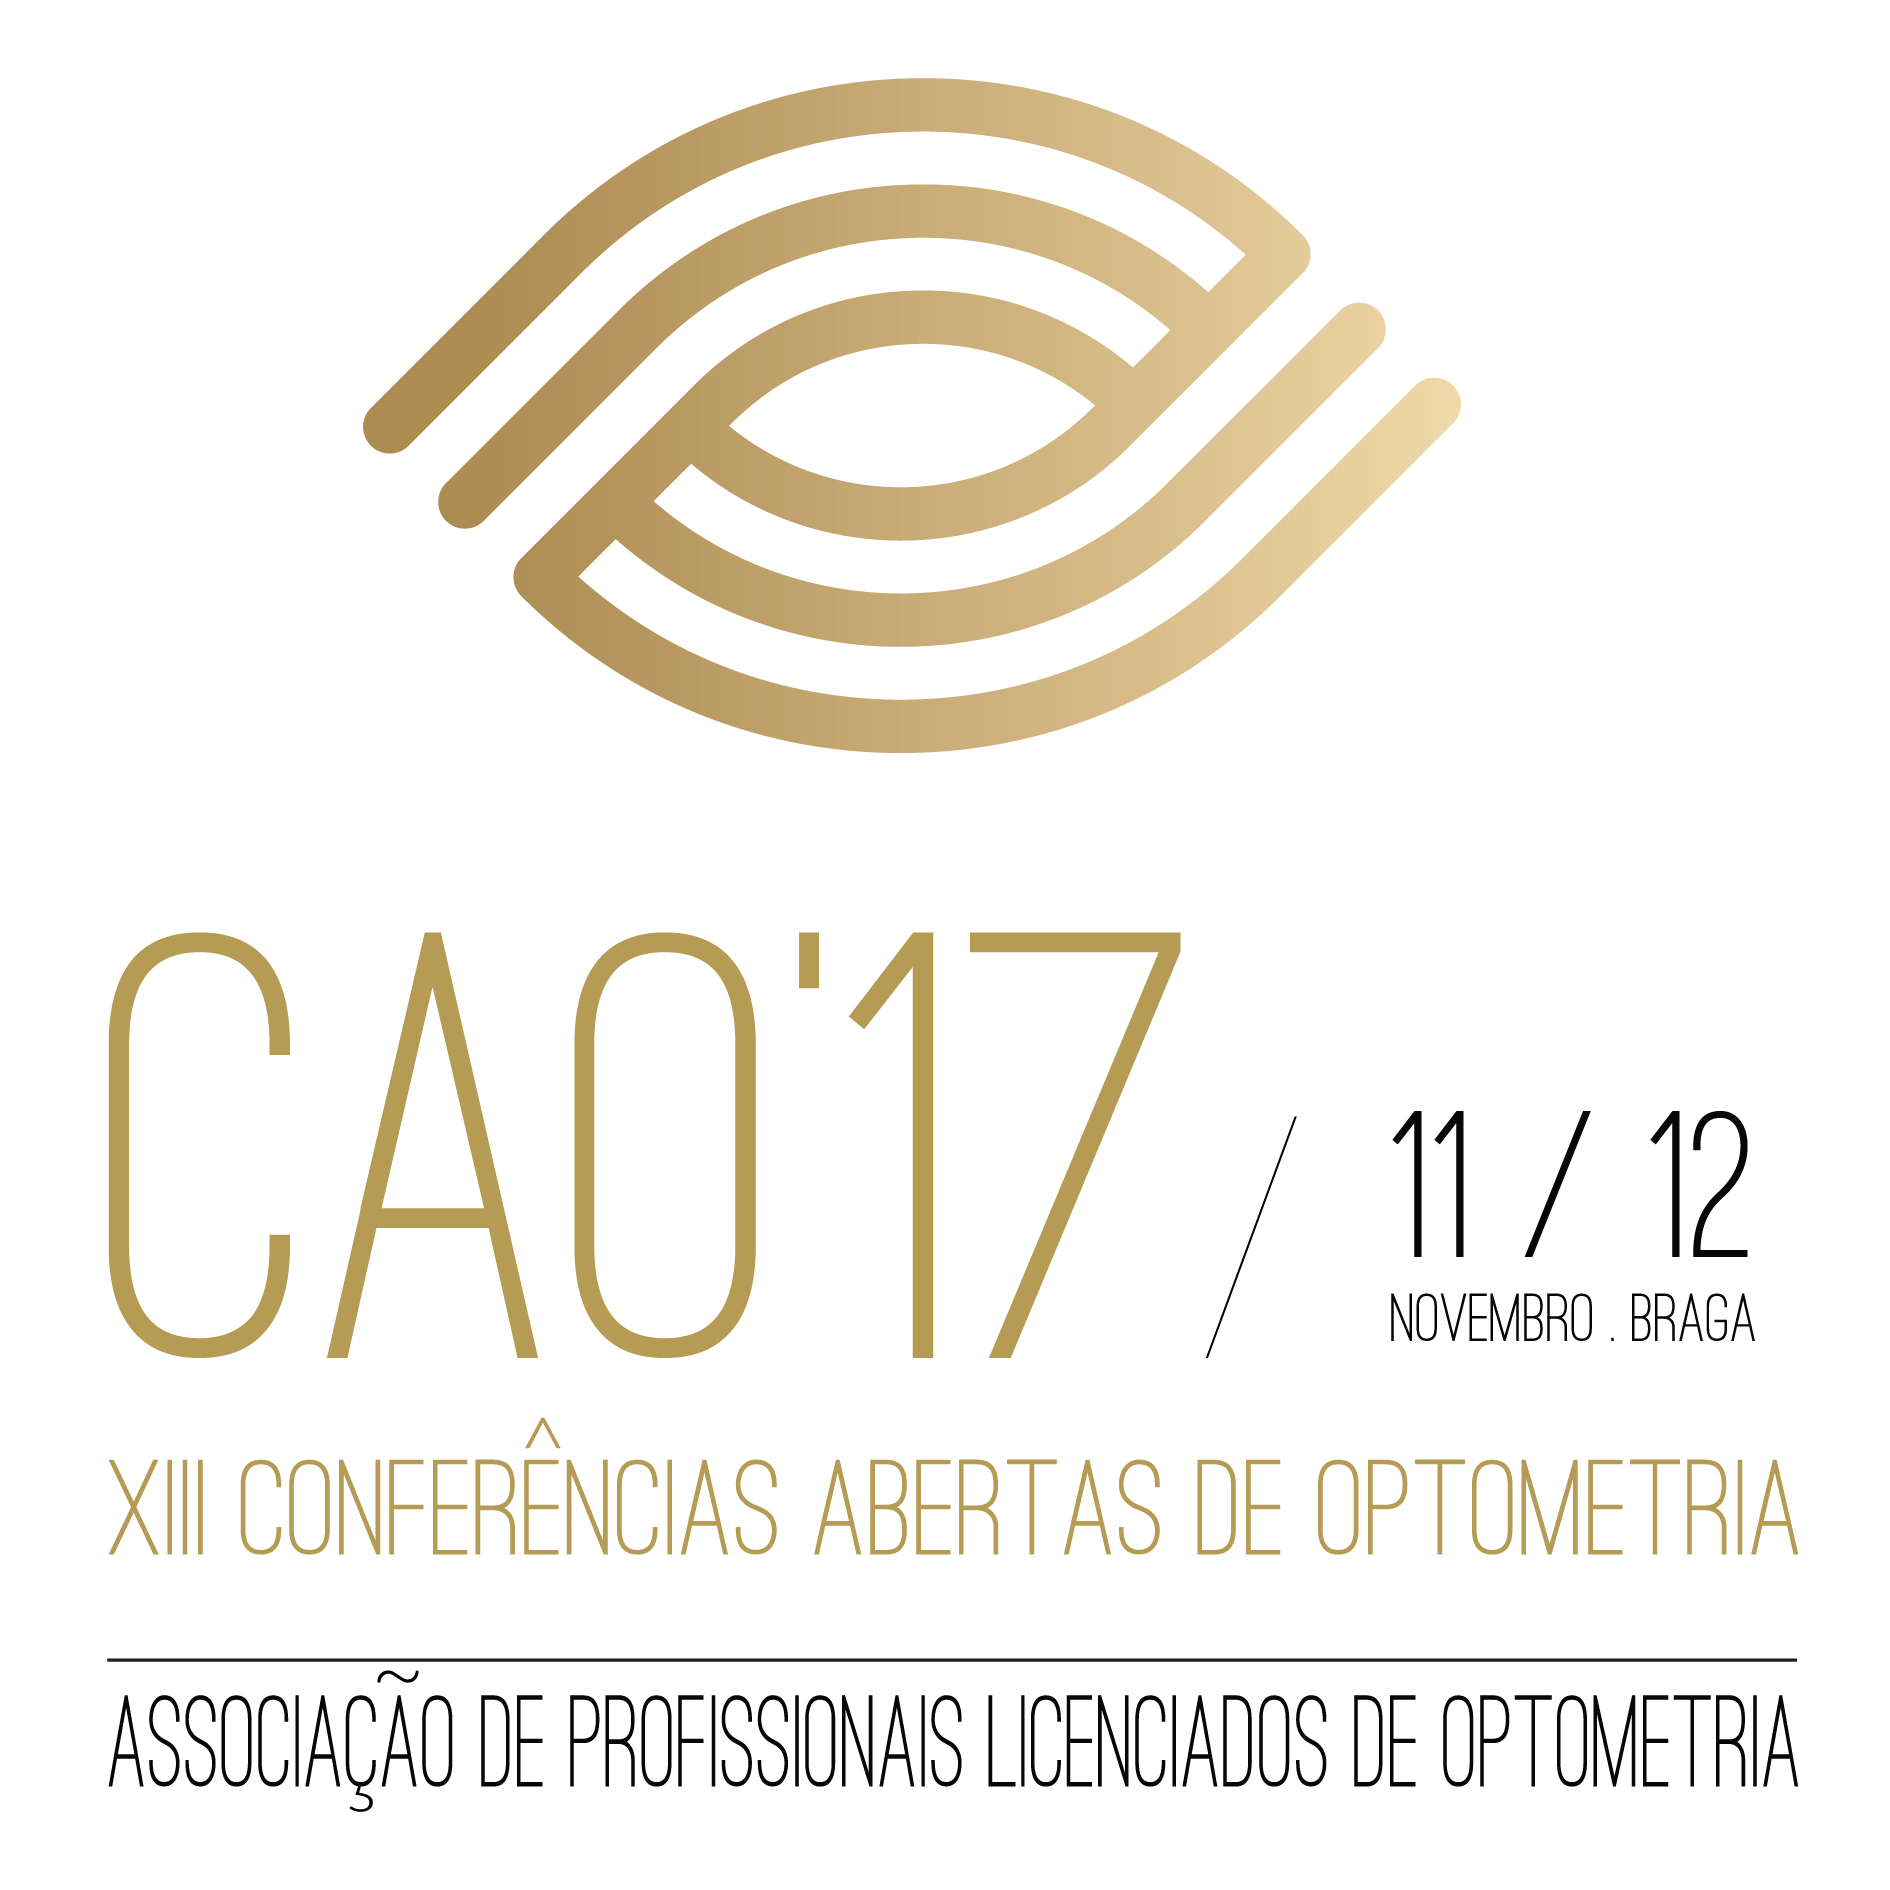 CAO'17 | XIII Conferências Abertas de Optometria